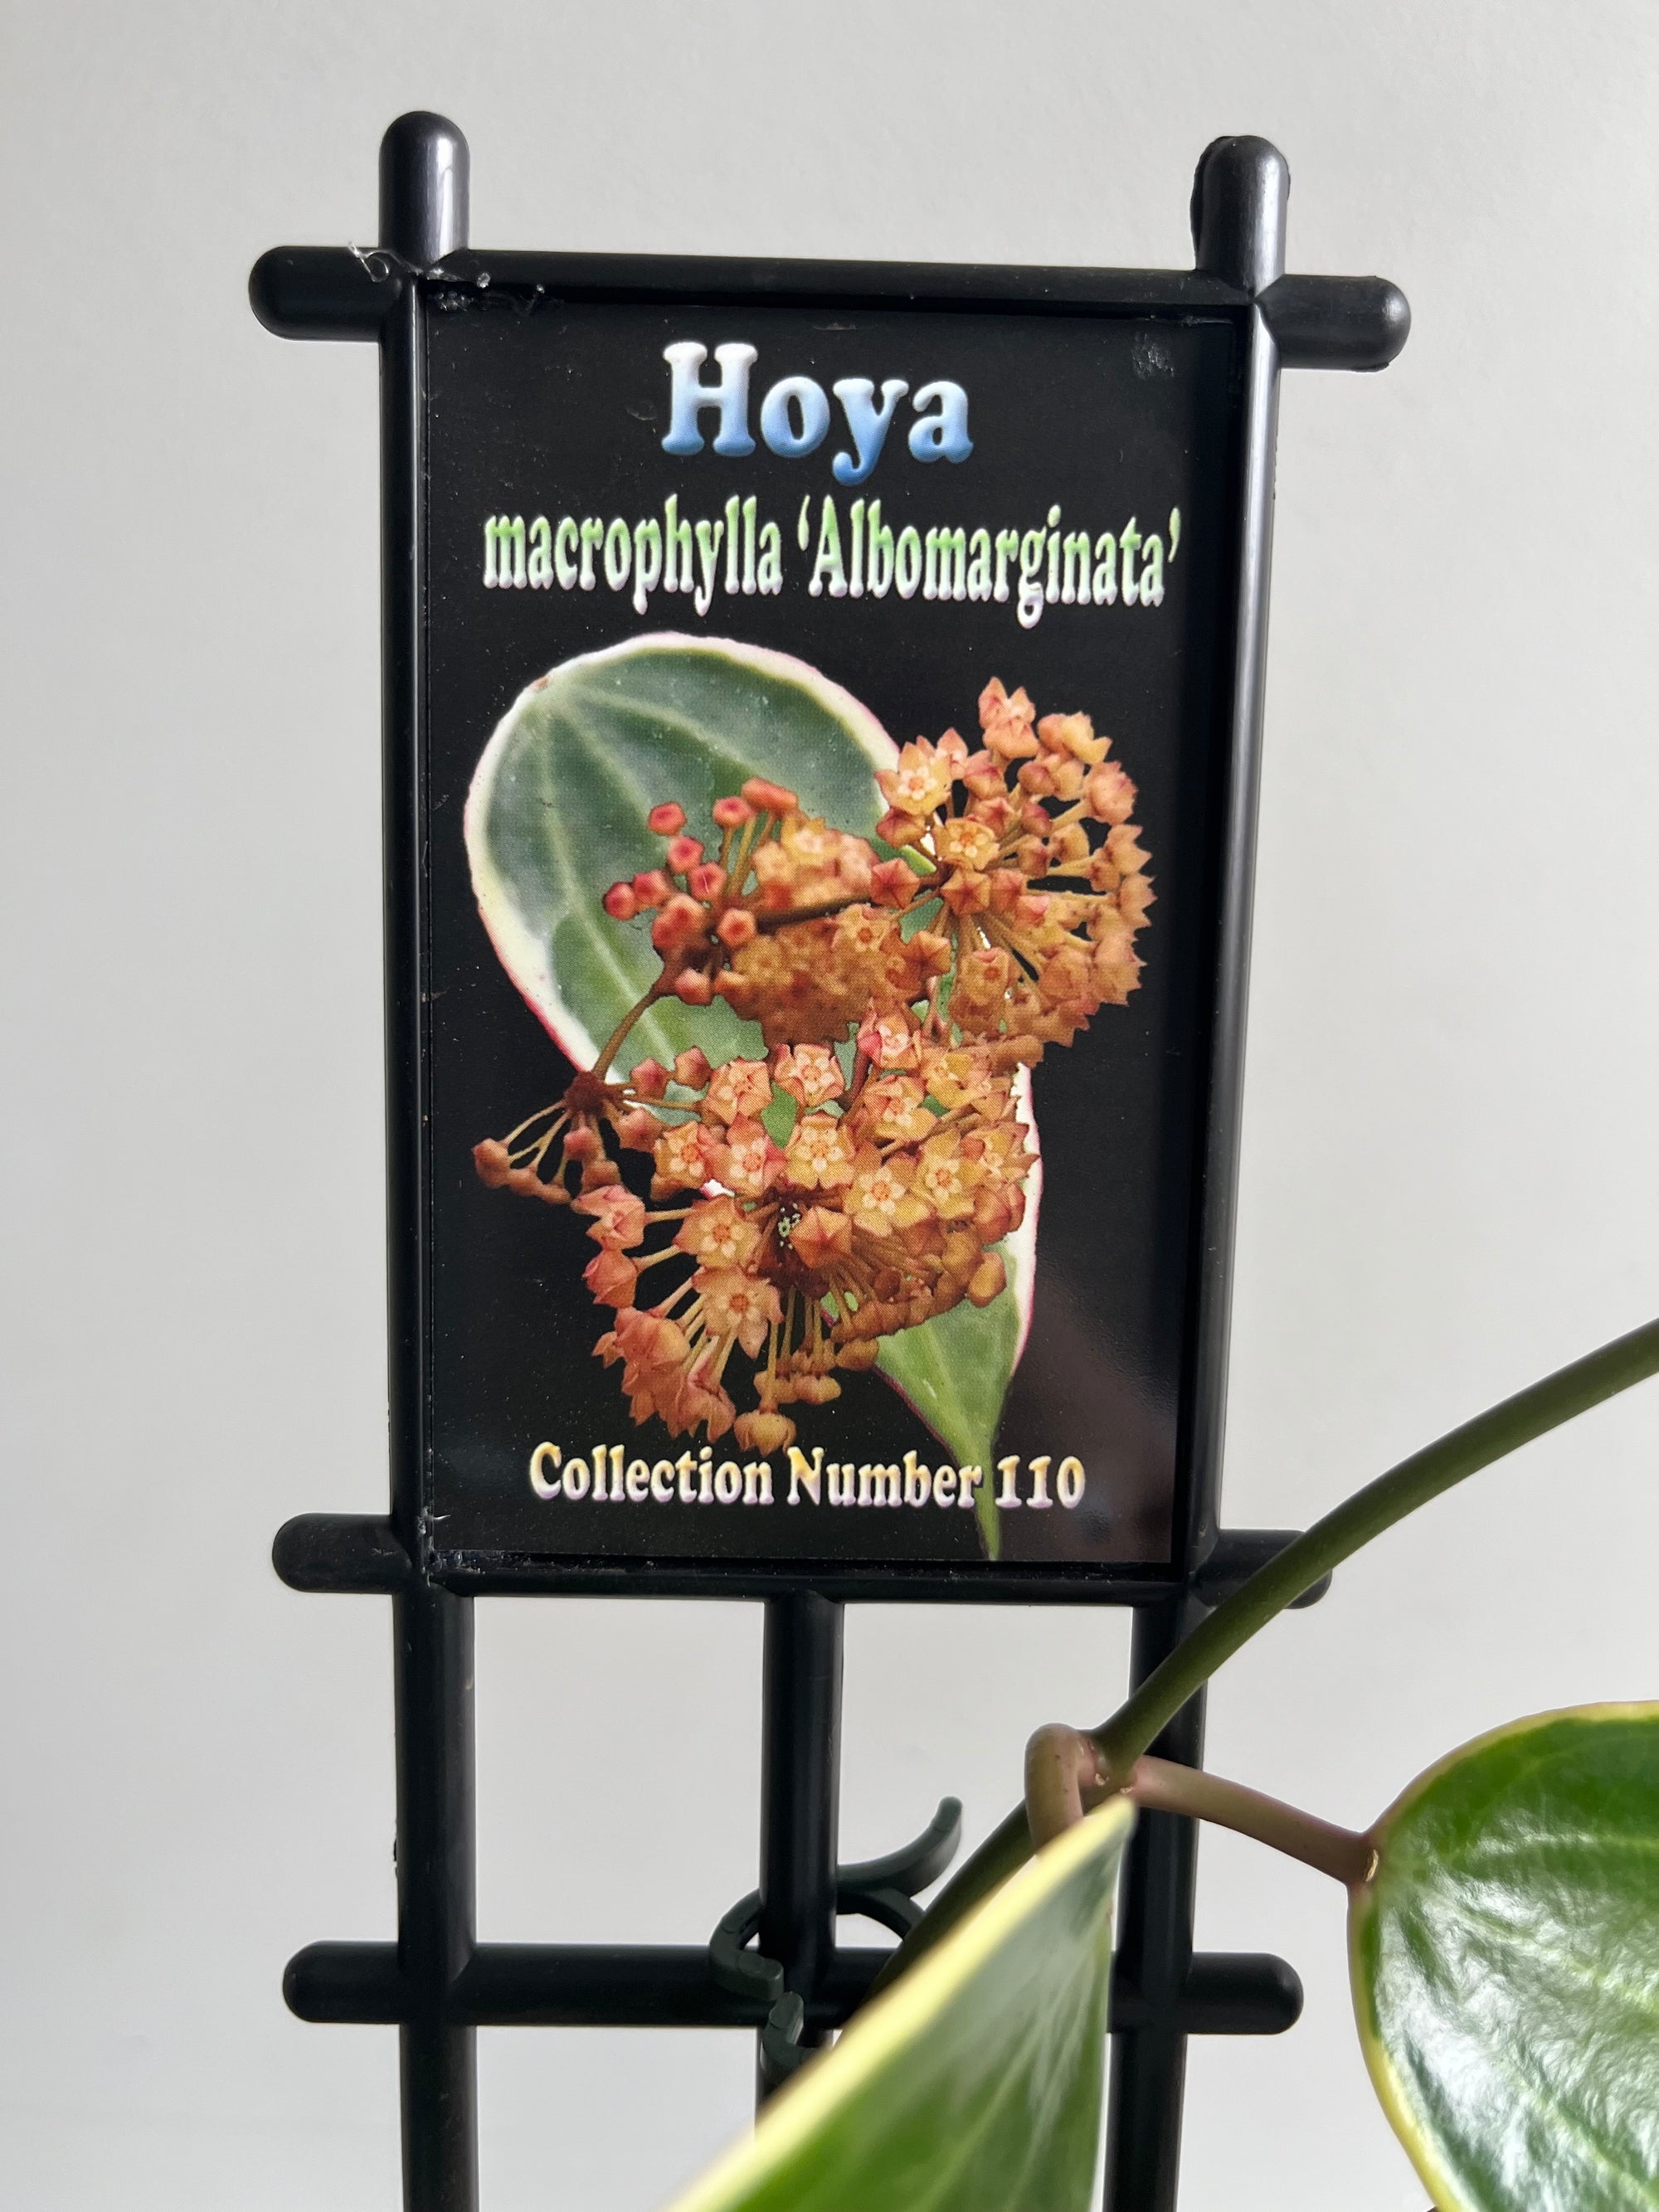 Hoya - Macrophylla 'Albomarginata' Collection No. 110